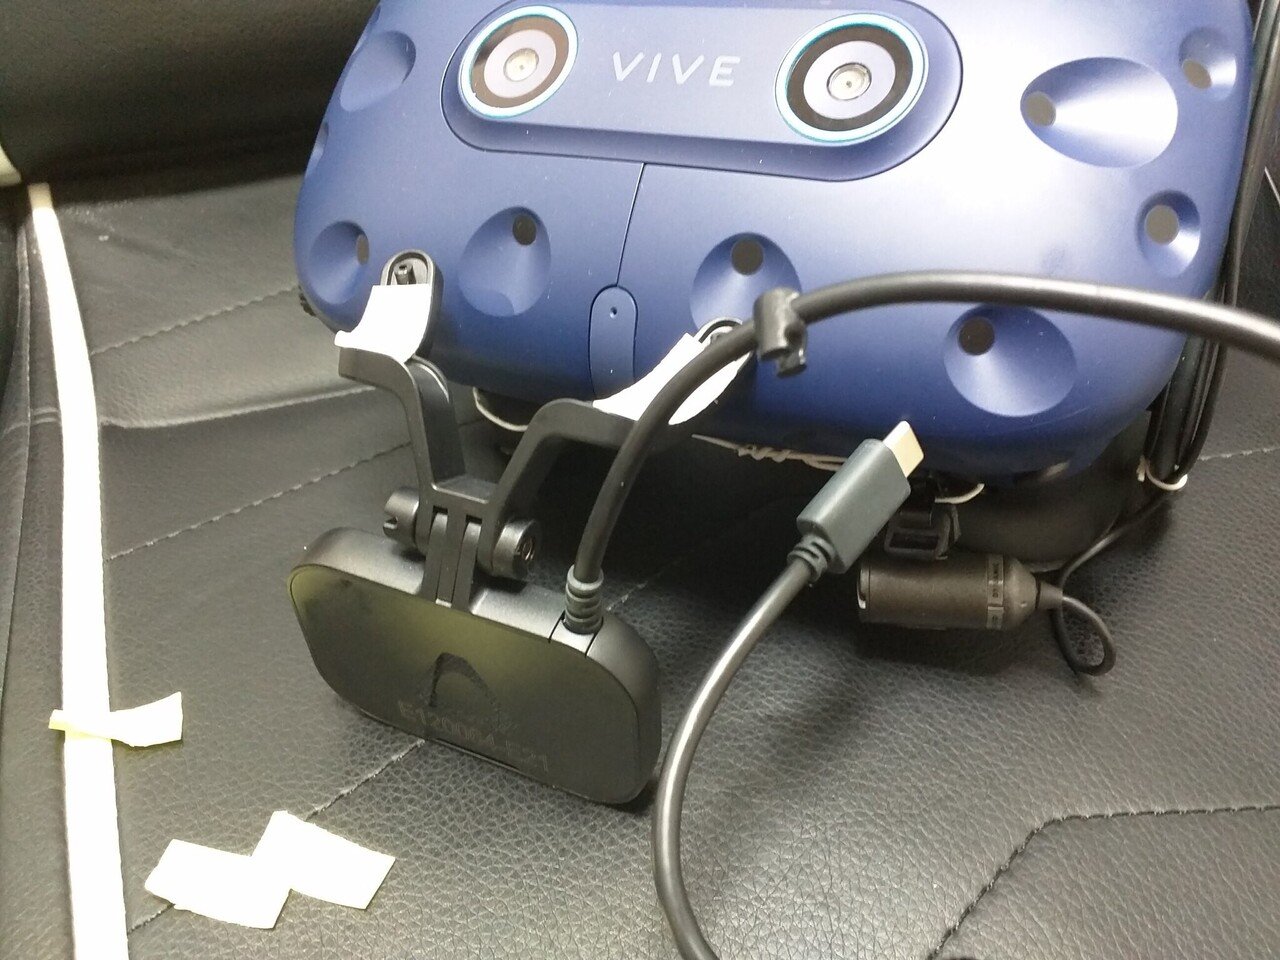 【限定】HTC VIVE フェイシャルトラッカー38種類の顔の動きをトラッキング